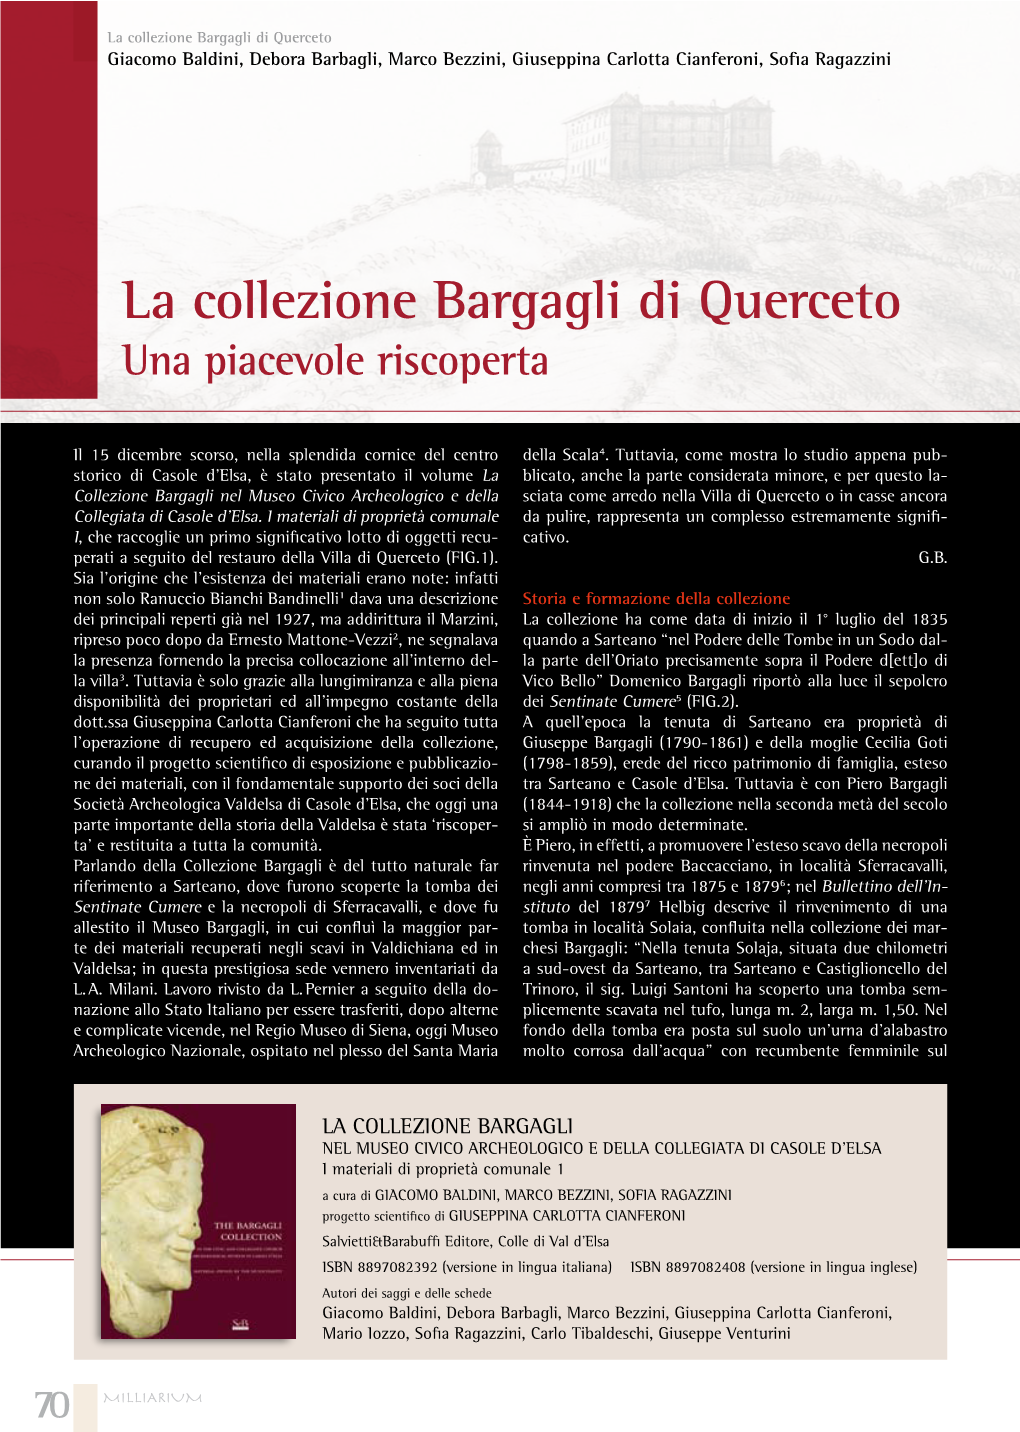 La Collezione Bargagli Di Querceto Giacomo Baldini, Debora Barbagli, Marco Bezzini, Giuseppina Carlotta Cianferoni, Soﬁa Ragazzini